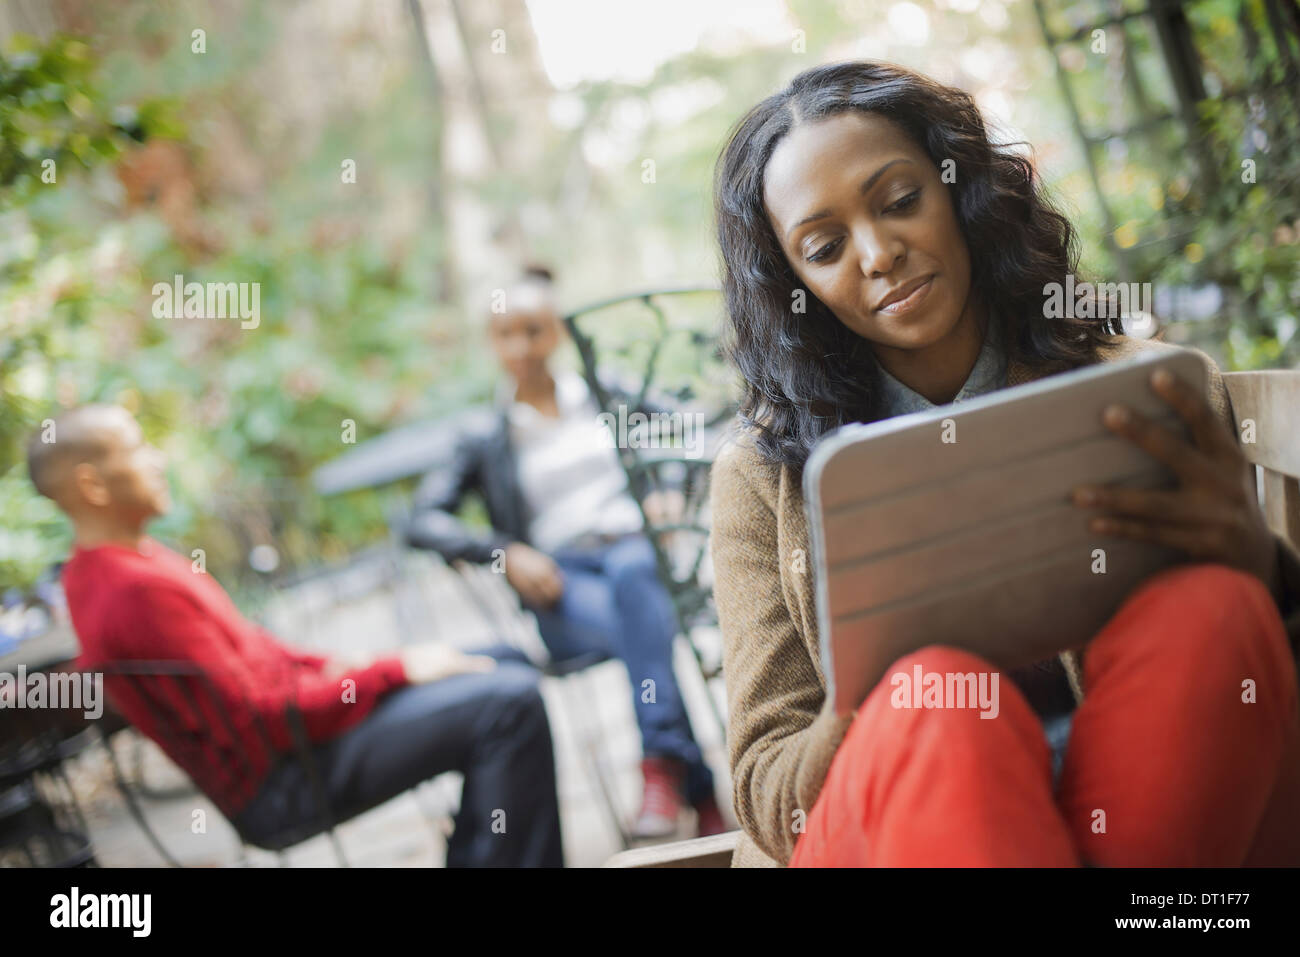 Szenen aus dem städtischen Leben in New York City im freien zwei Personen im Hintergrund A Frau mit einem Tablet-Computer oder pad Stockfoto